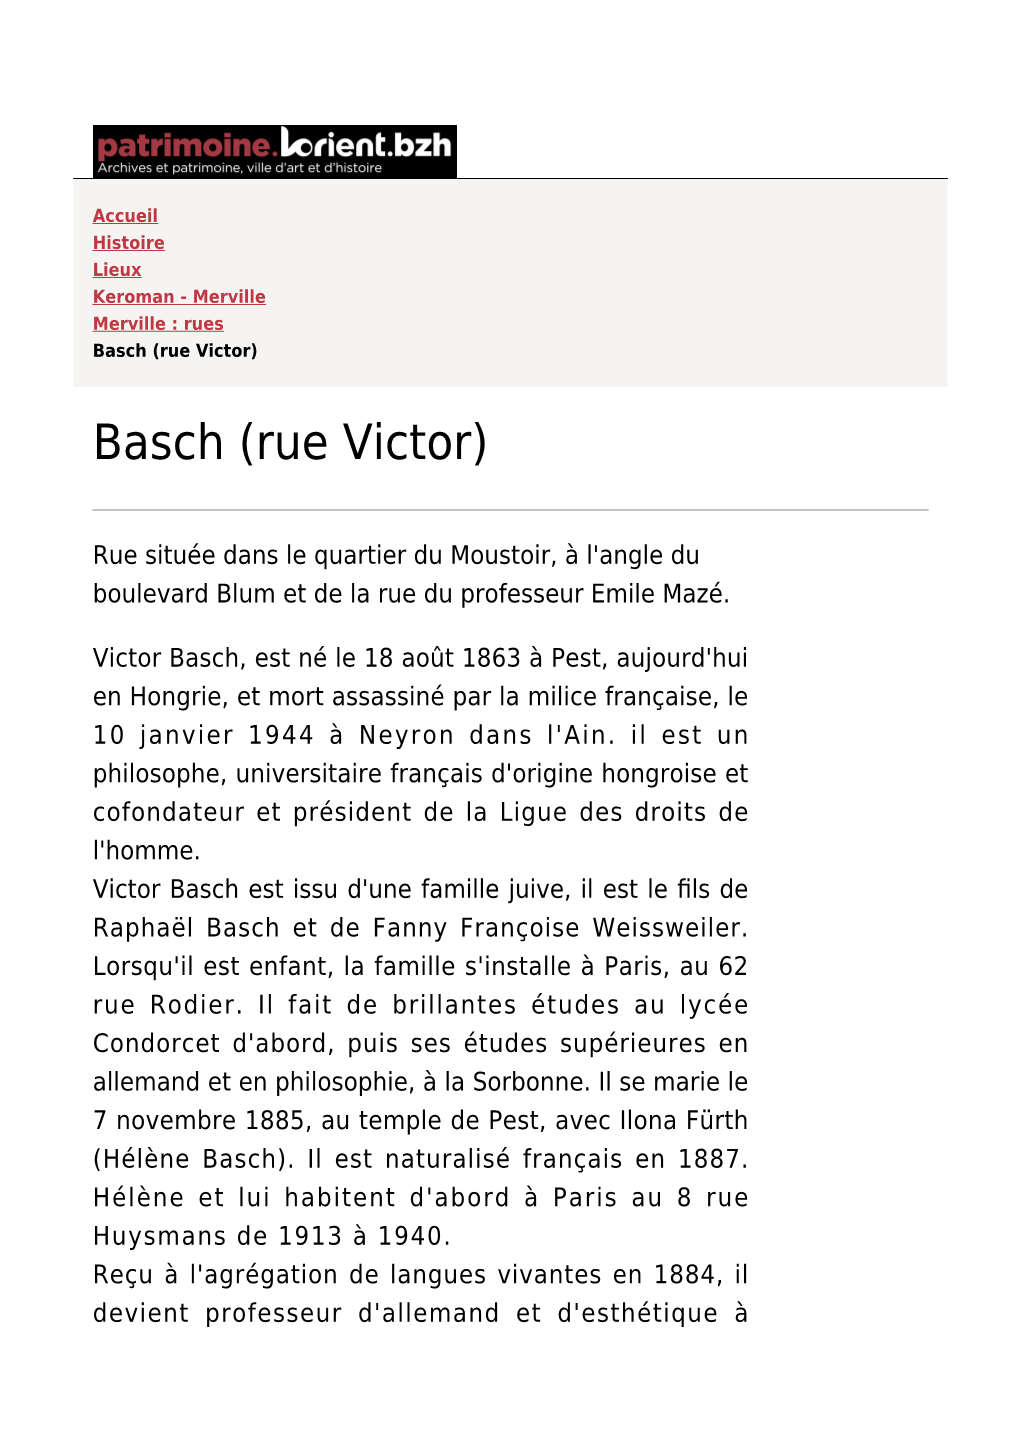 Basch (Rue Victor)